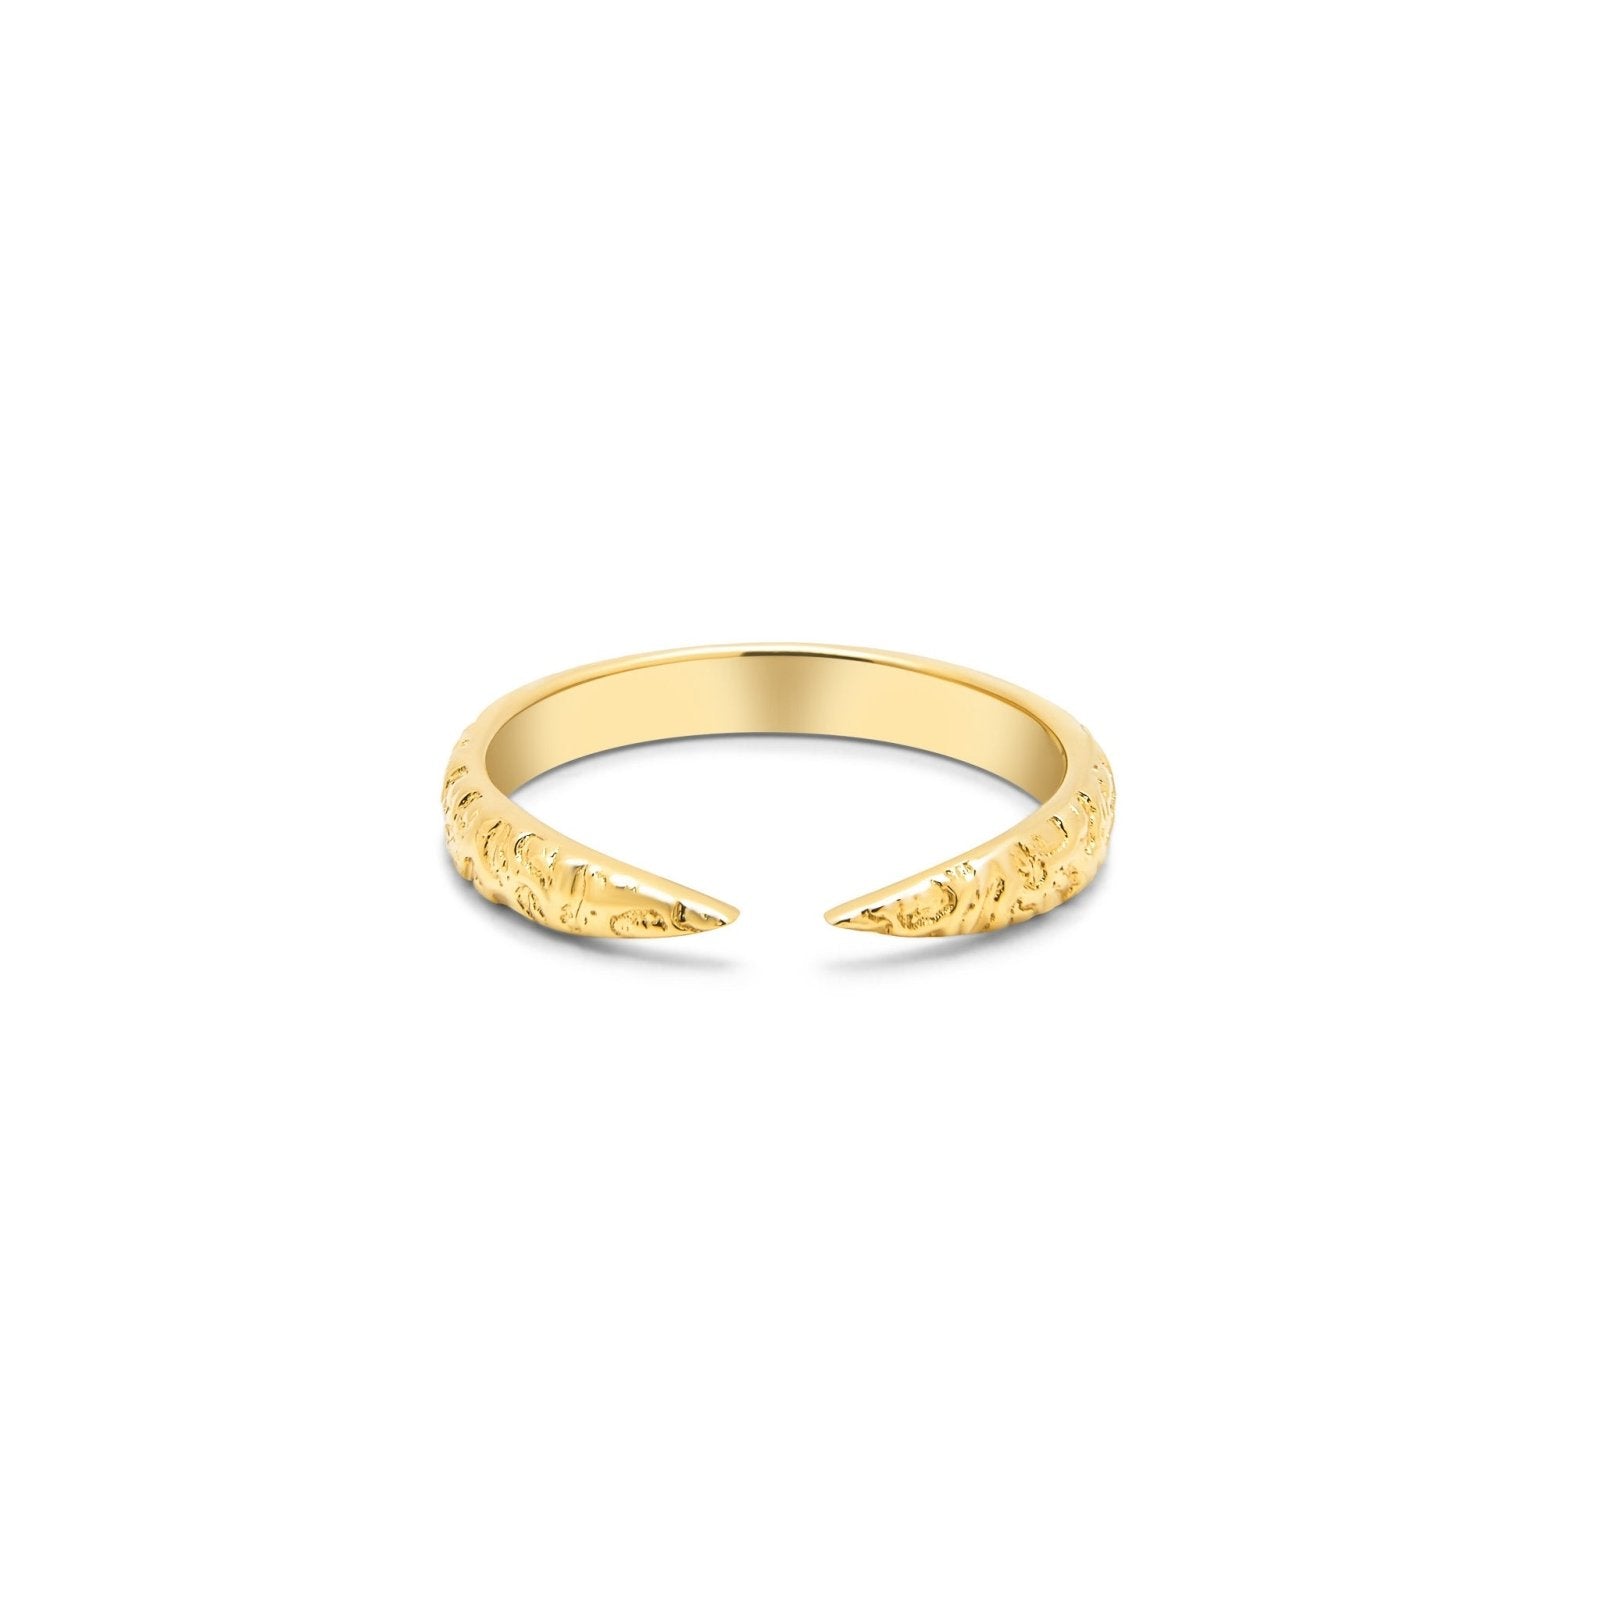 Fen Gold Vermeil Ring - Honoura